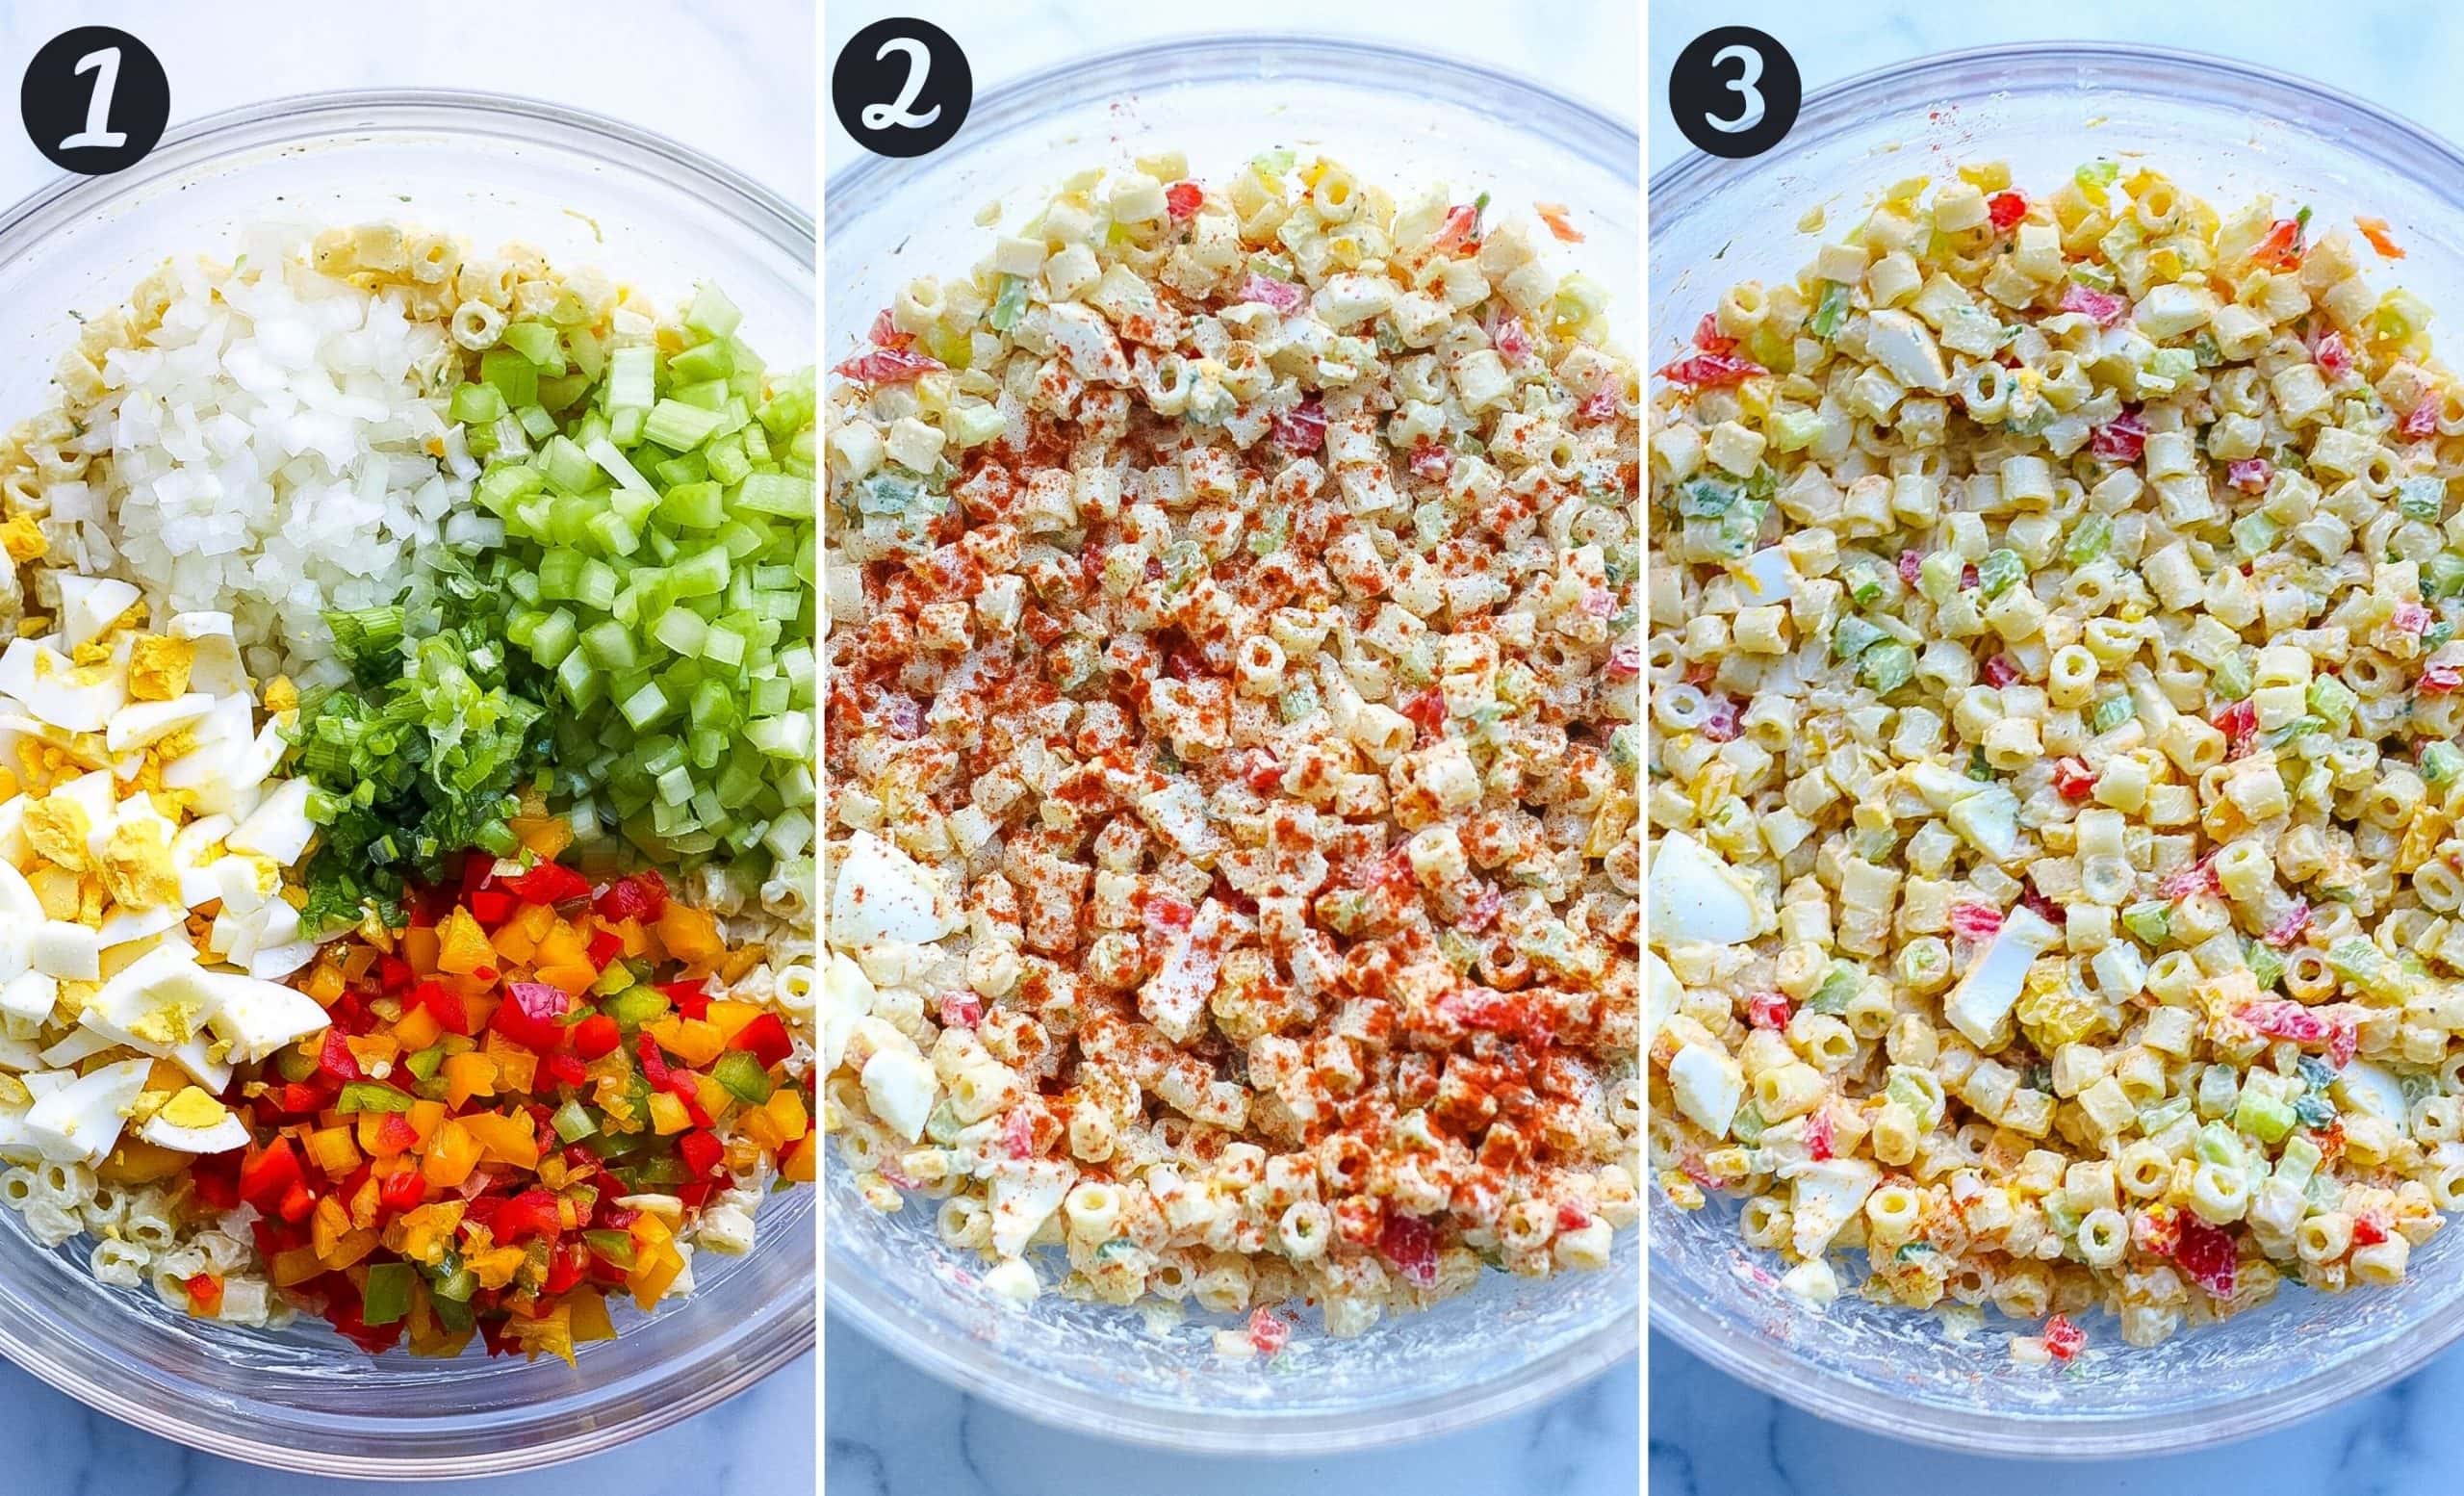 How to make macaroni salad